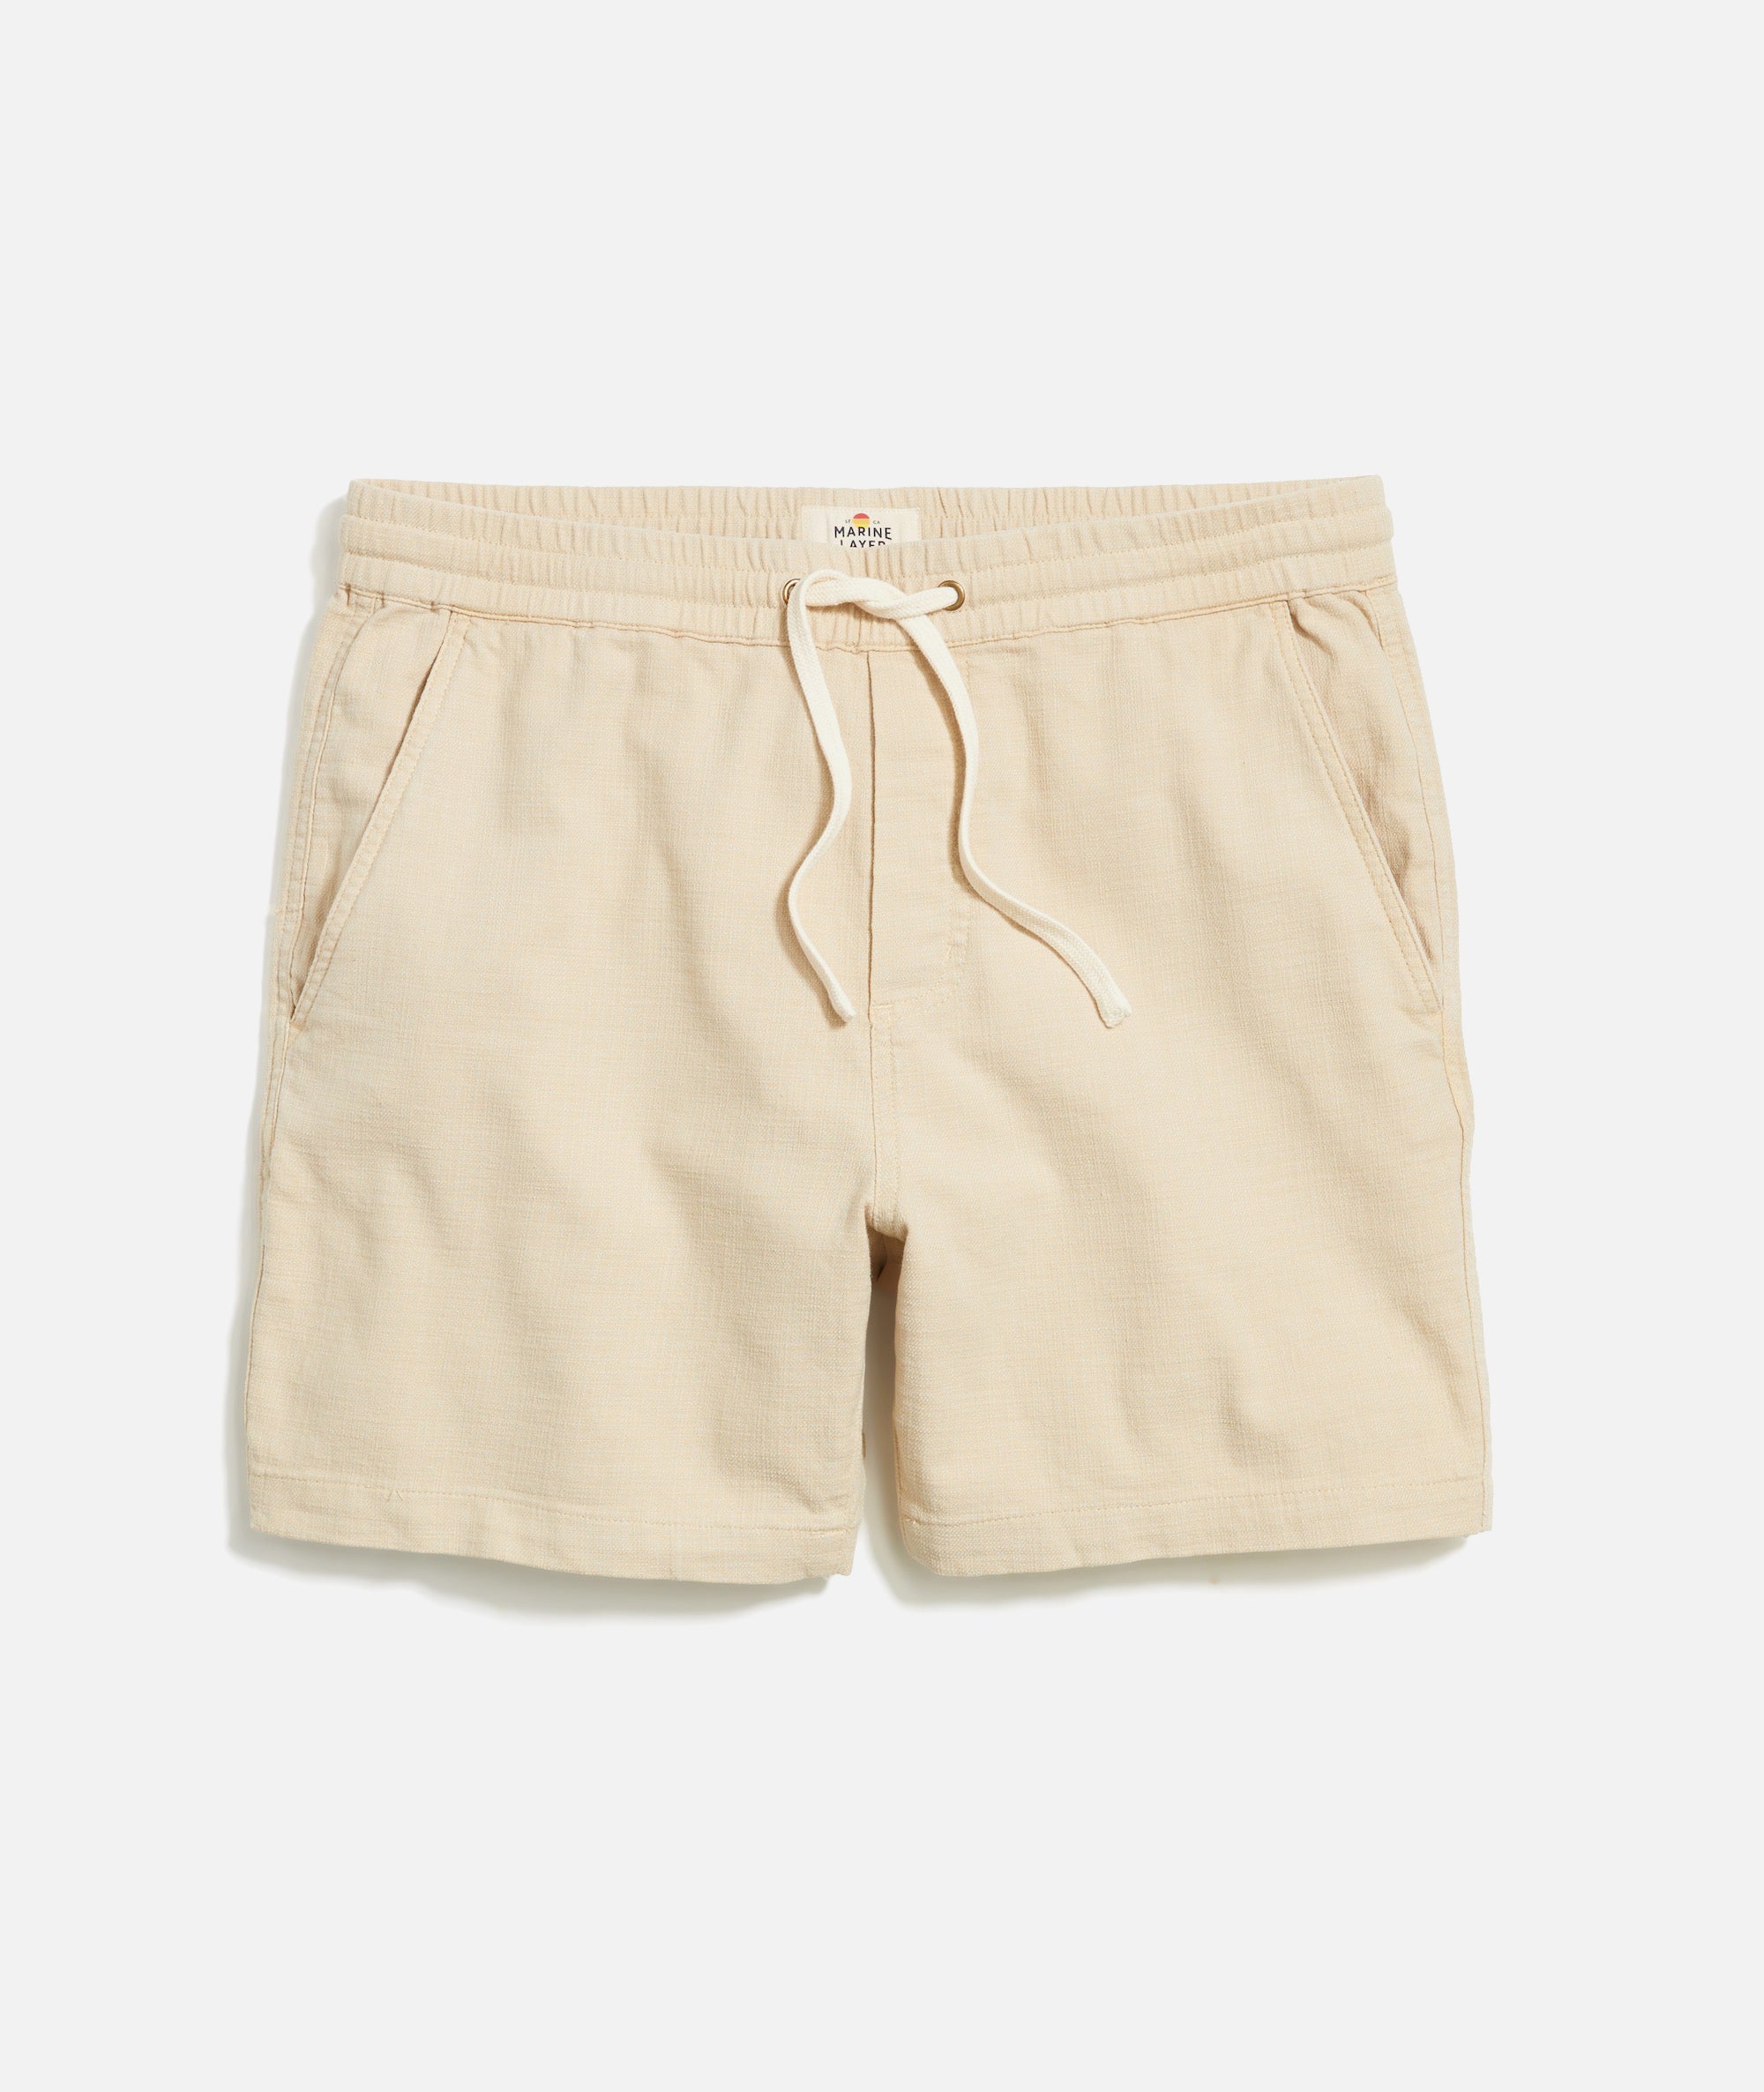 Guys Shorts – Marine Layer